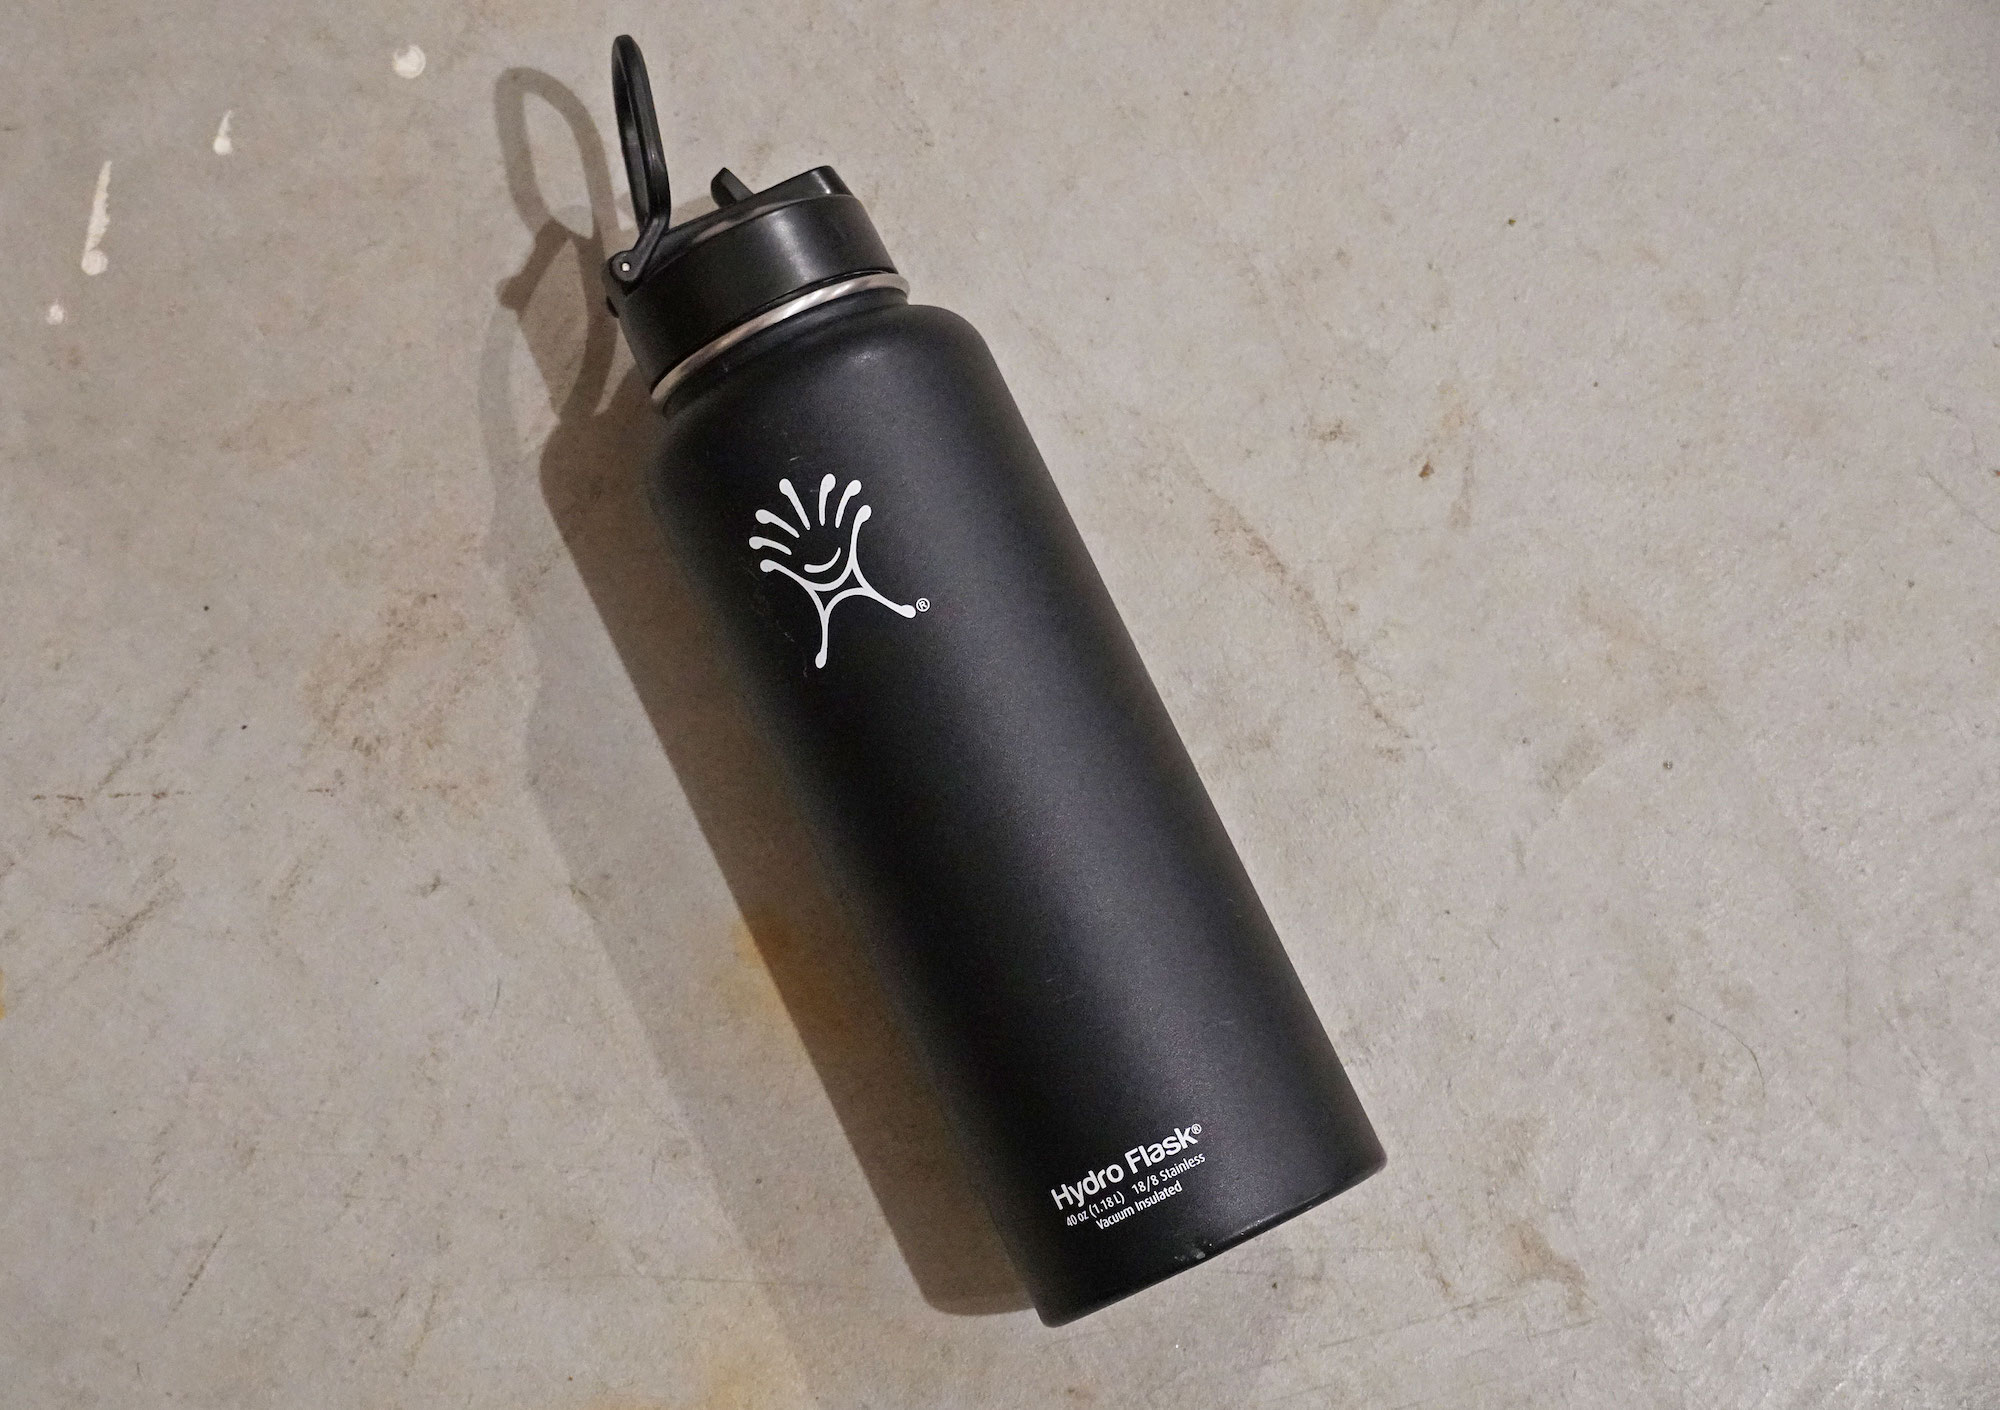 A black Hydro Flask water bottle